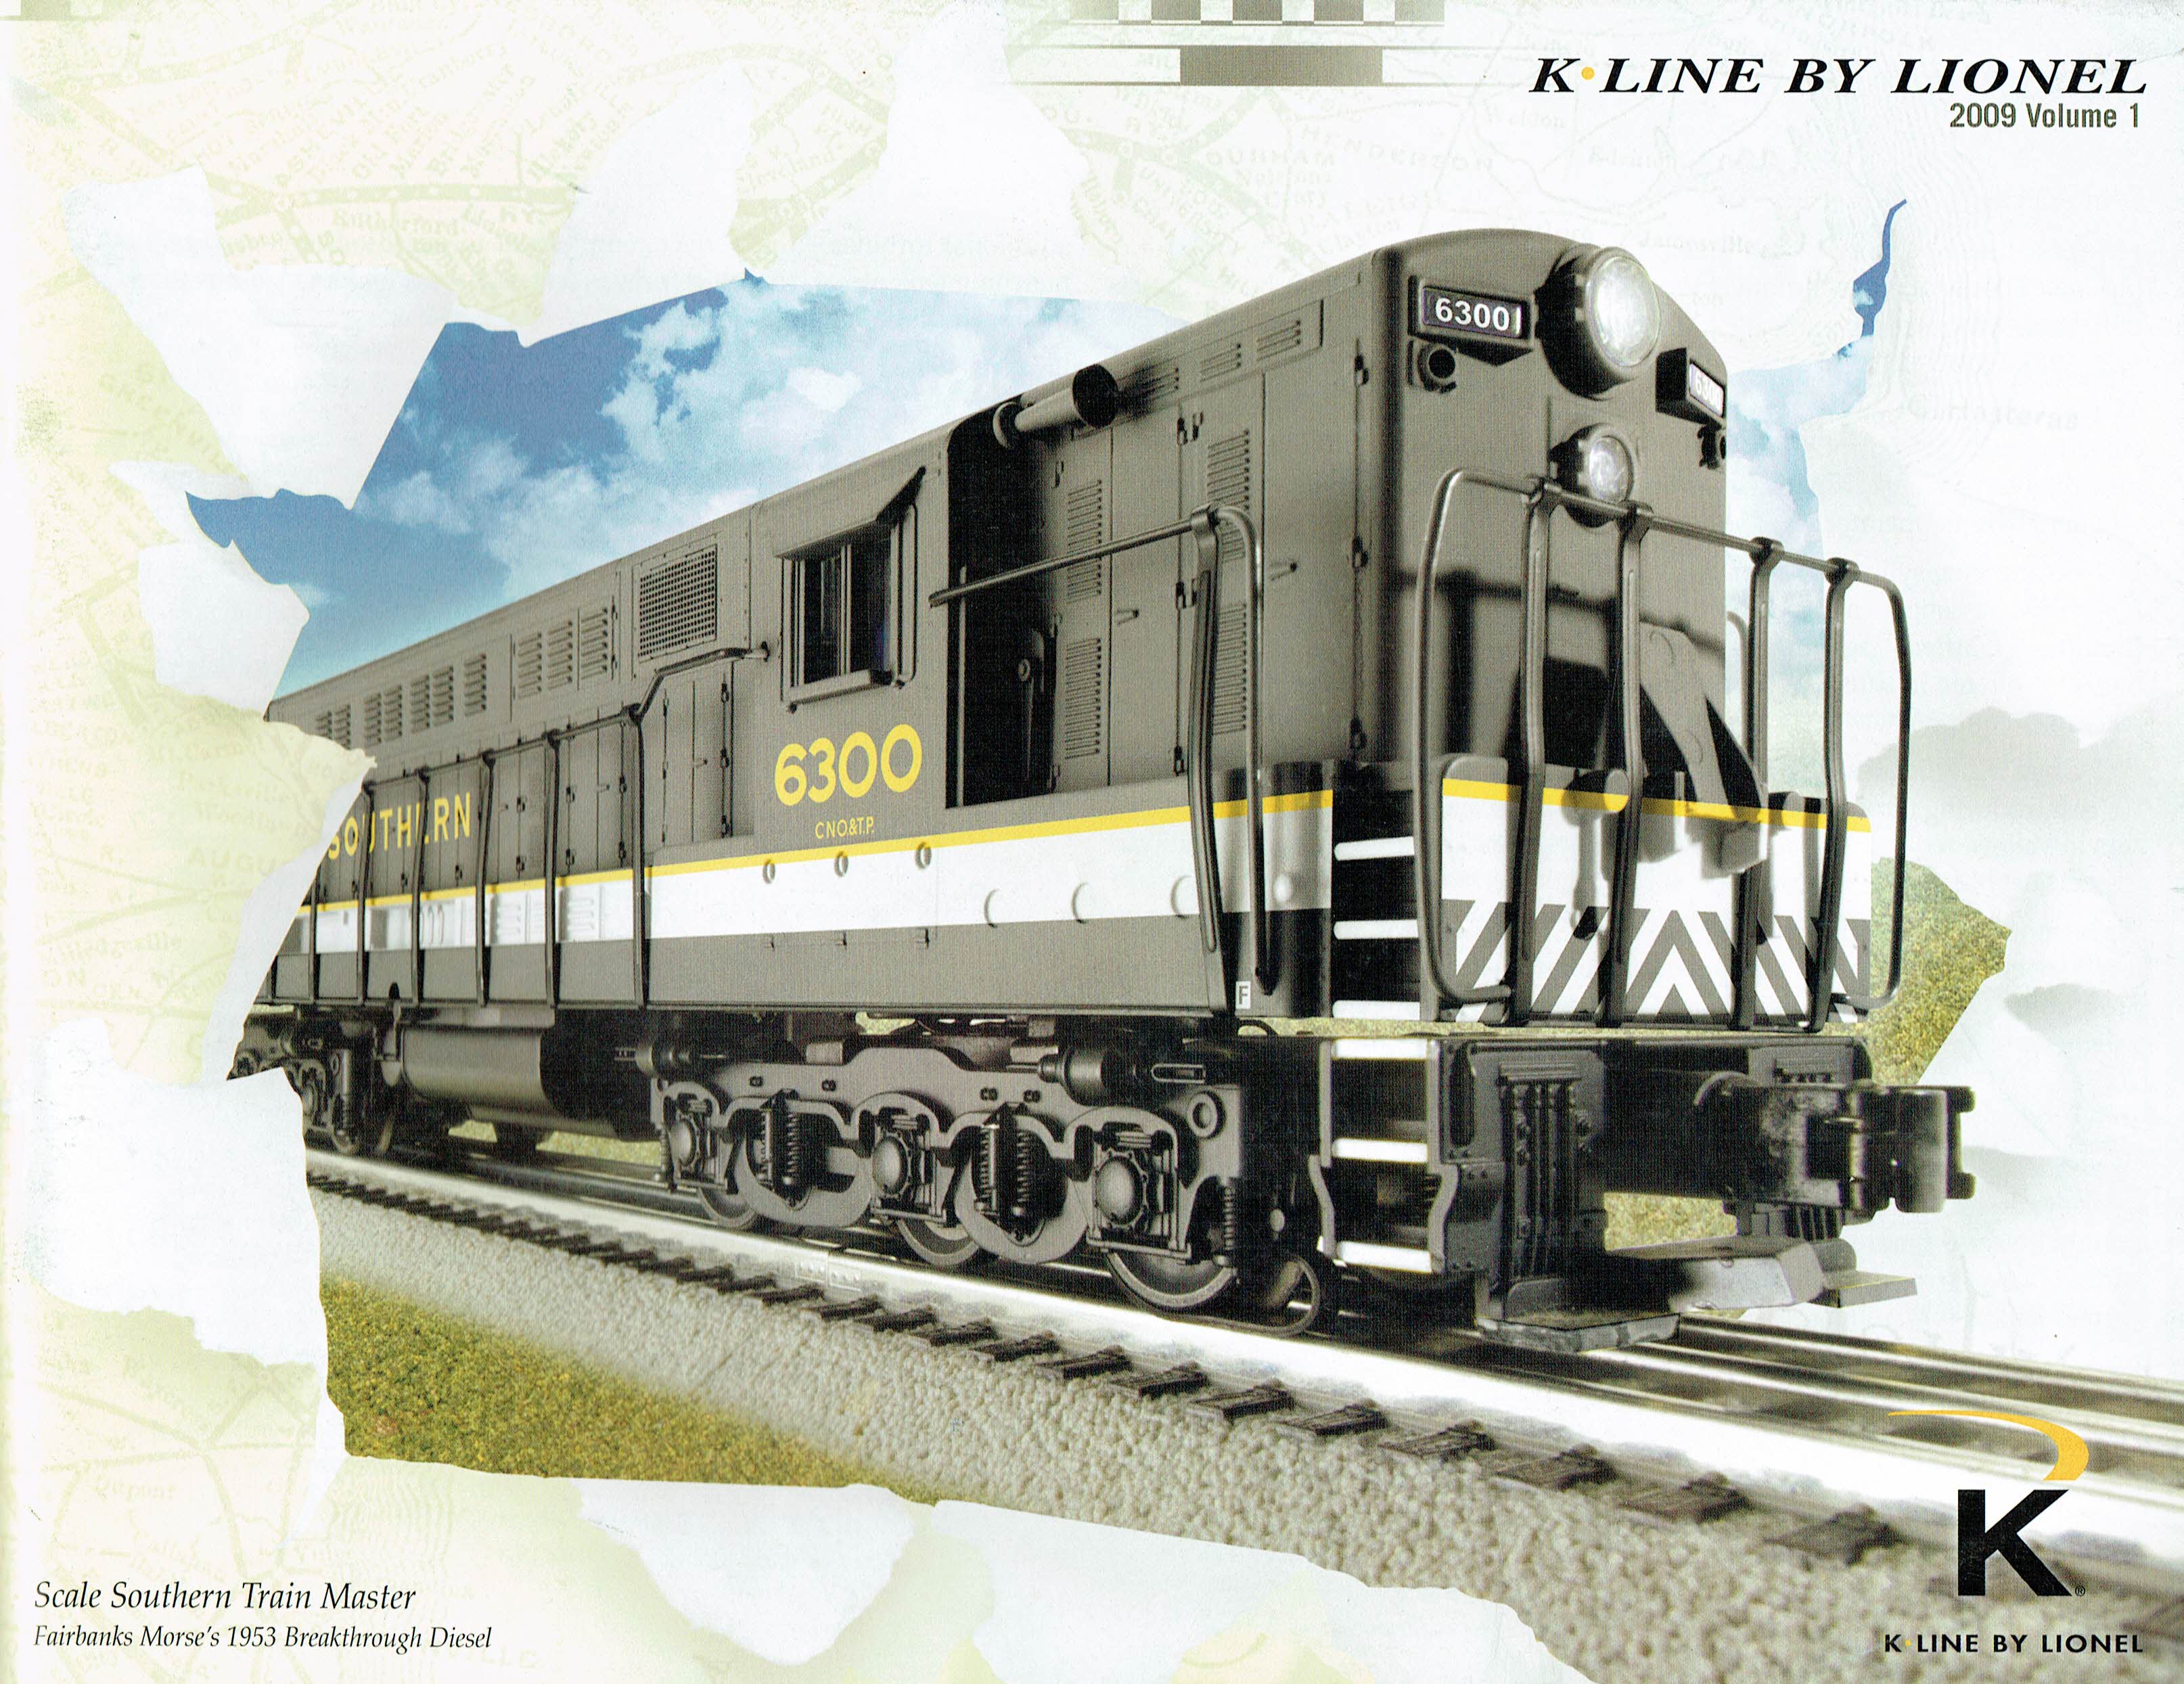 K-Line by Lionel 2009 Volume 1 Catalog image